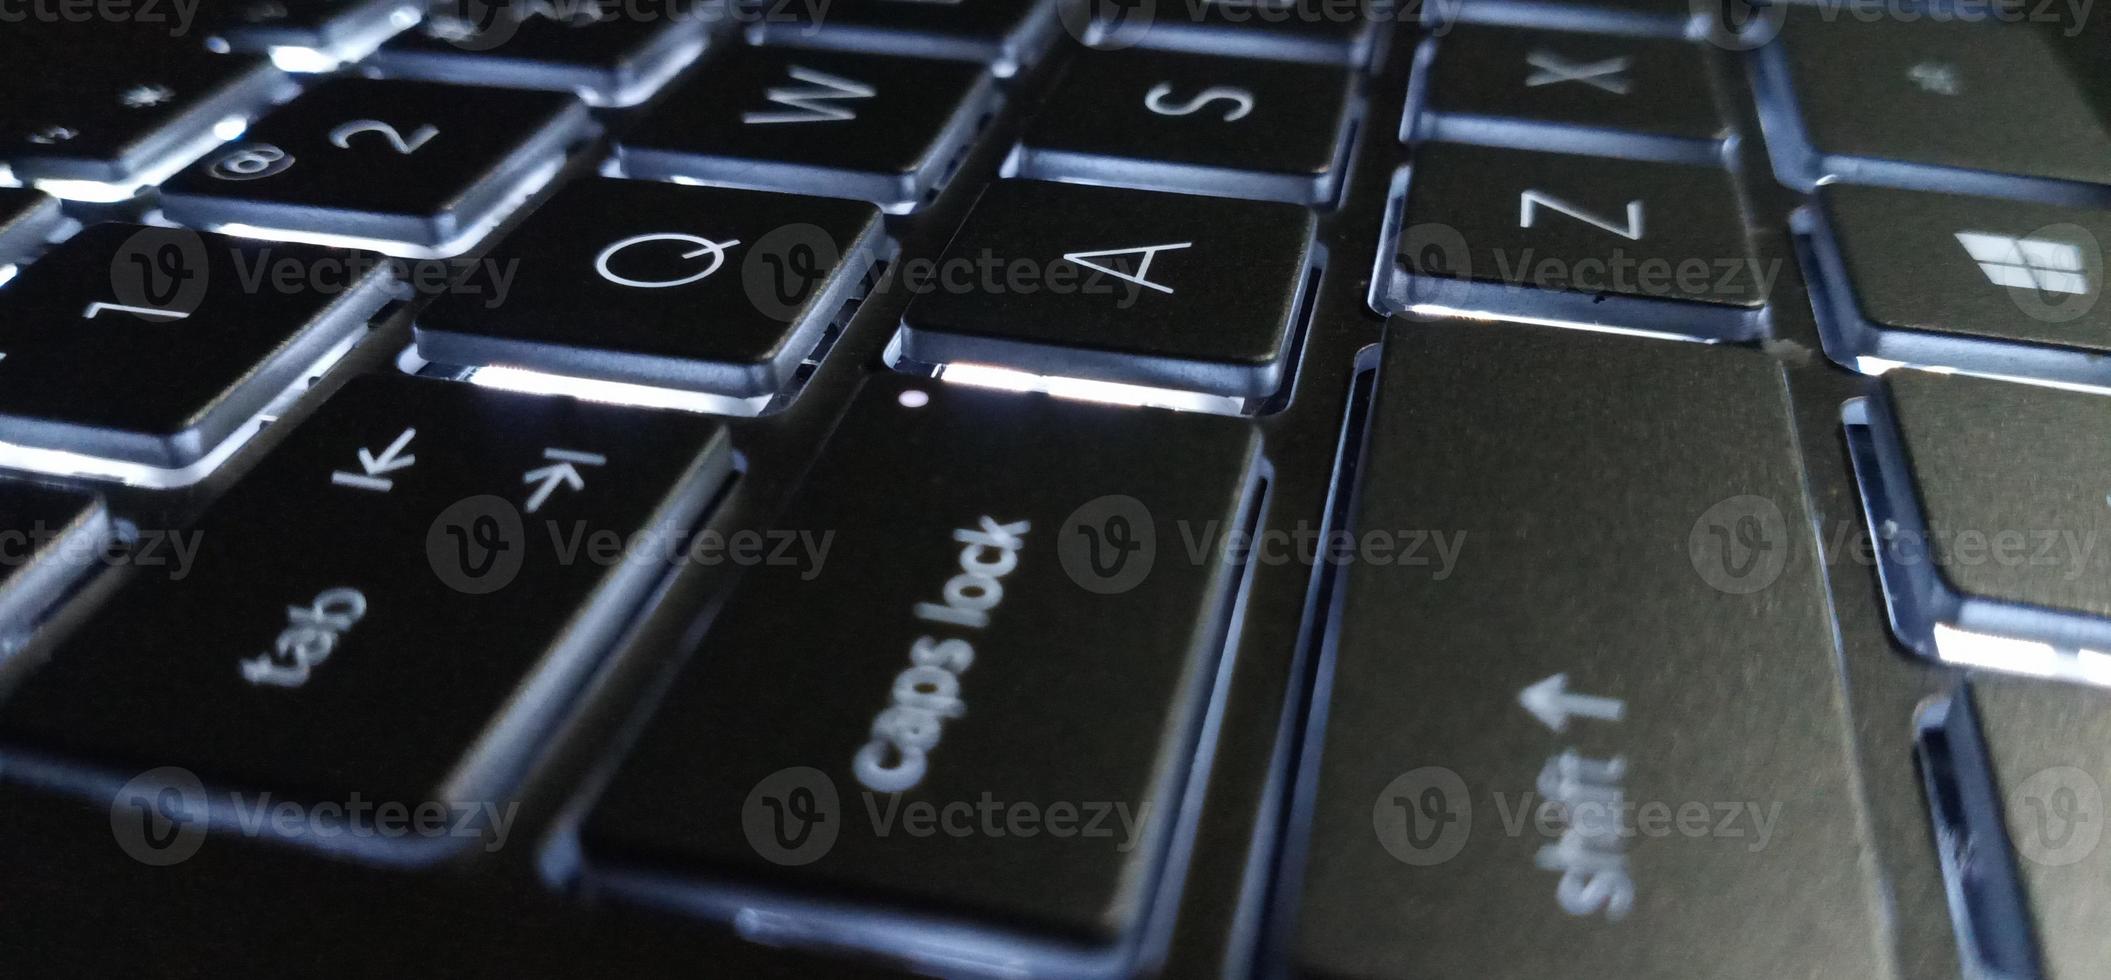 teclado fotográfico com luz de fundo branca, foto tirada pela câmera do smartphone